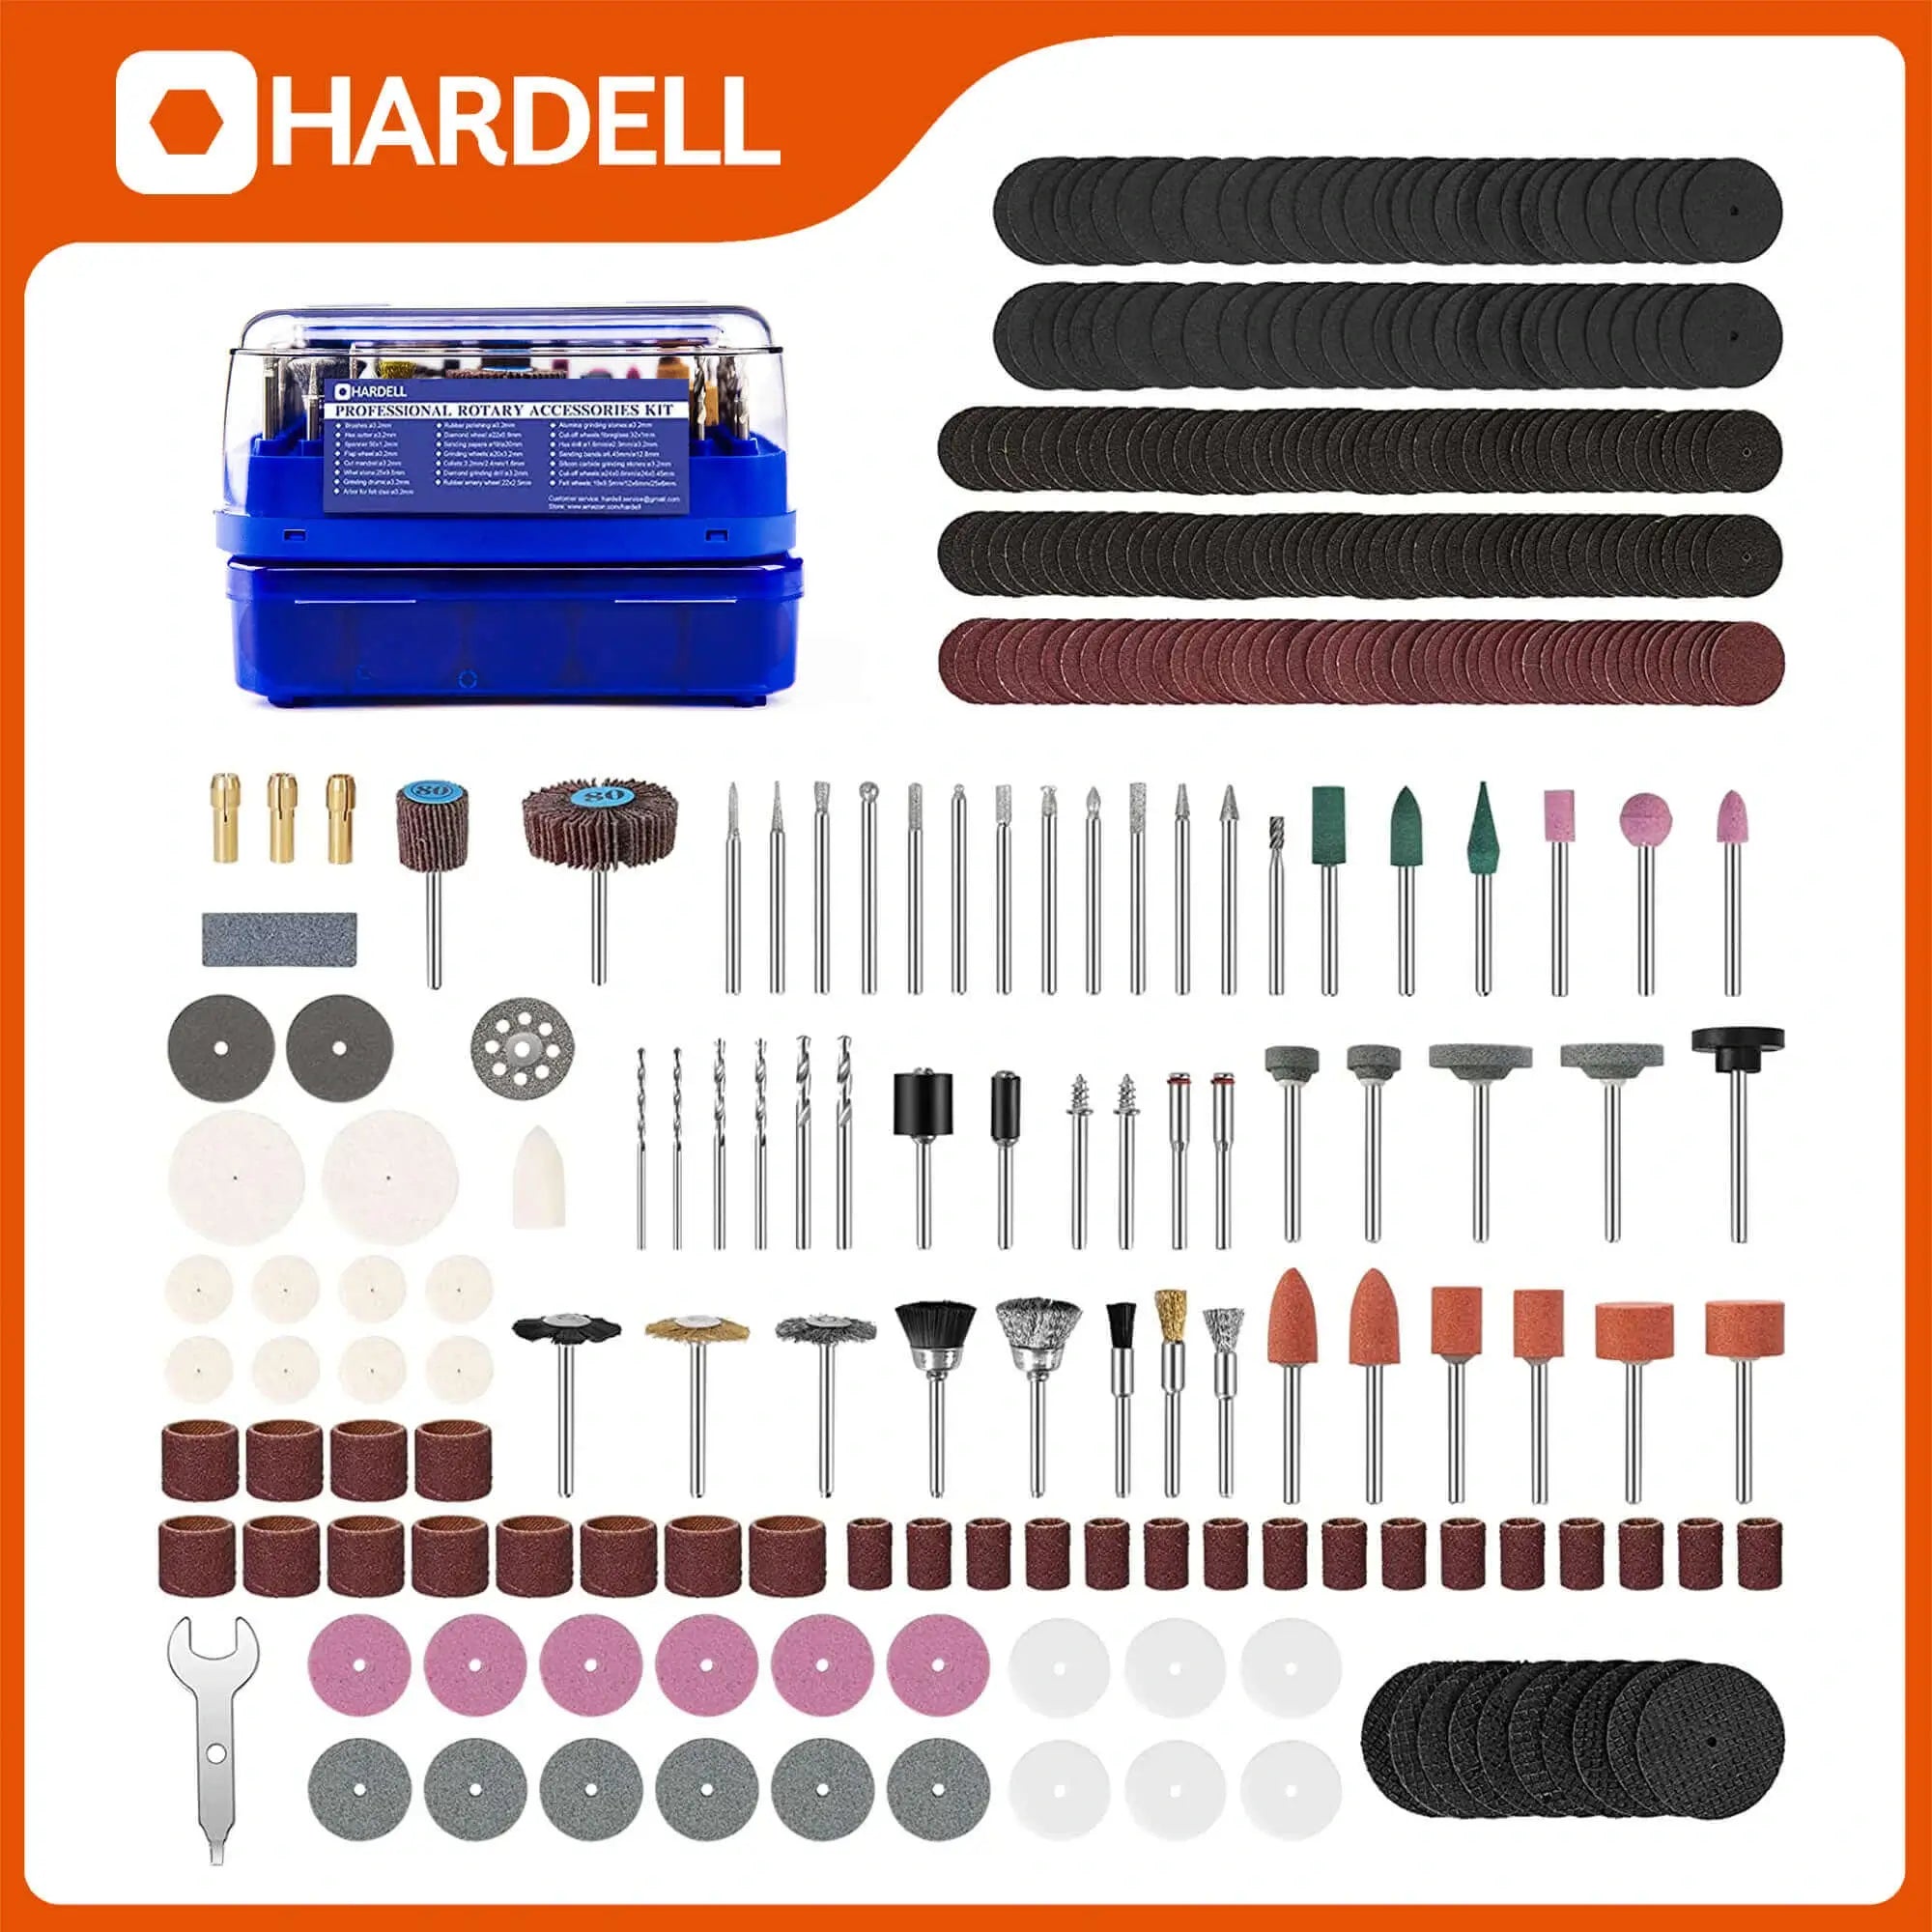 Hardell_346_Pcs_Power_Rotary_Tool_Bits_03